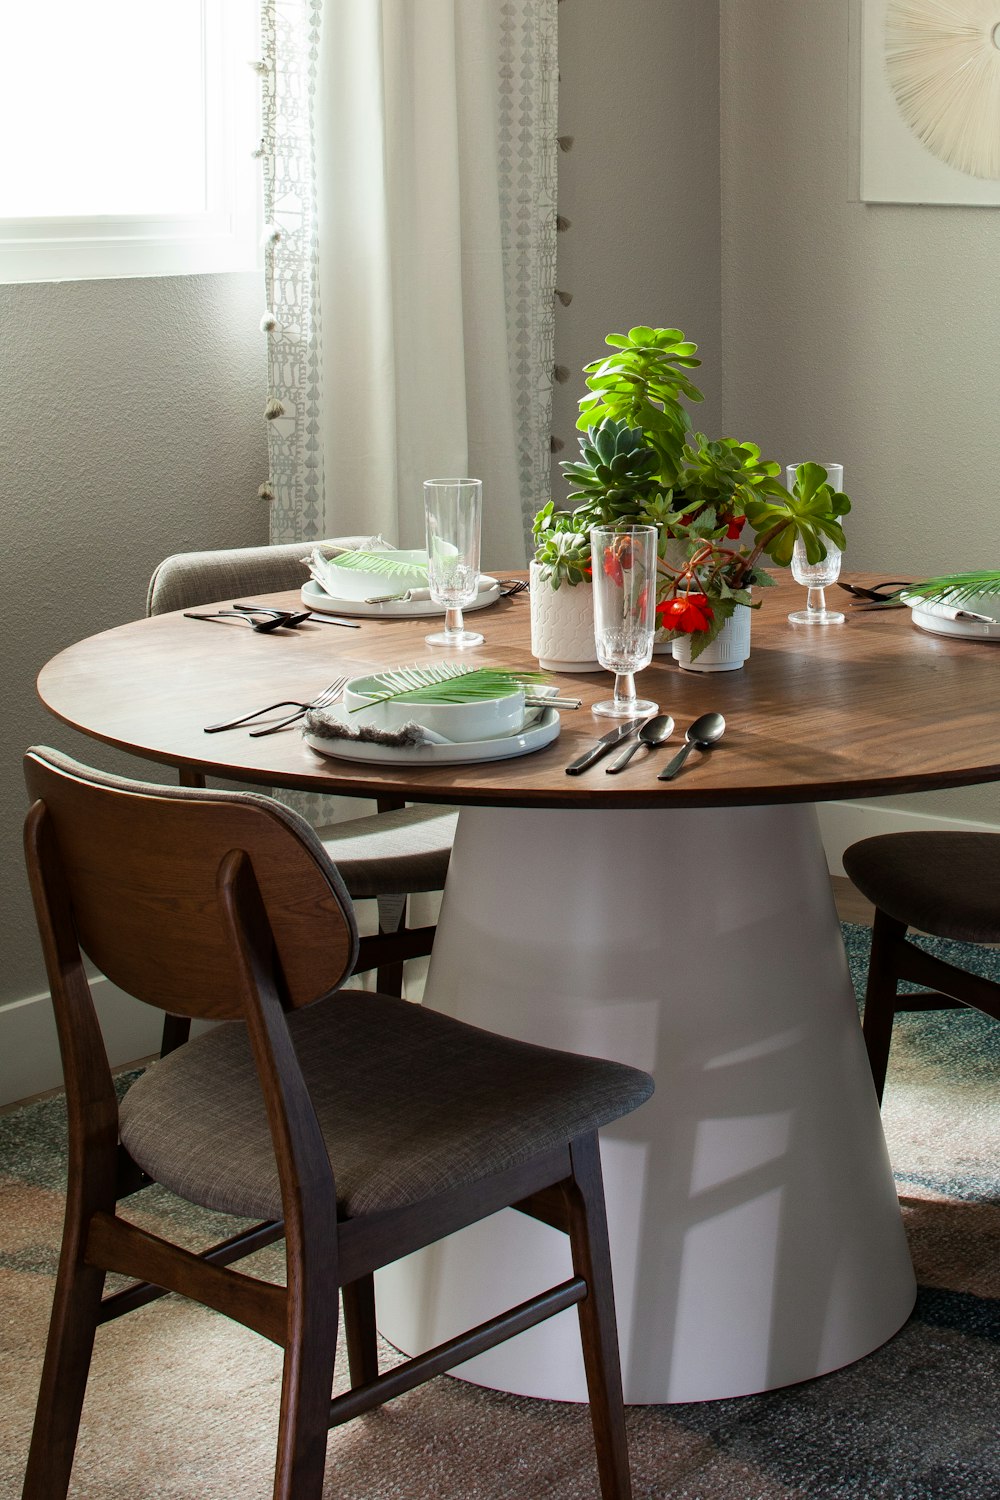 una mesa de comedor con sillas y una planta en maceta